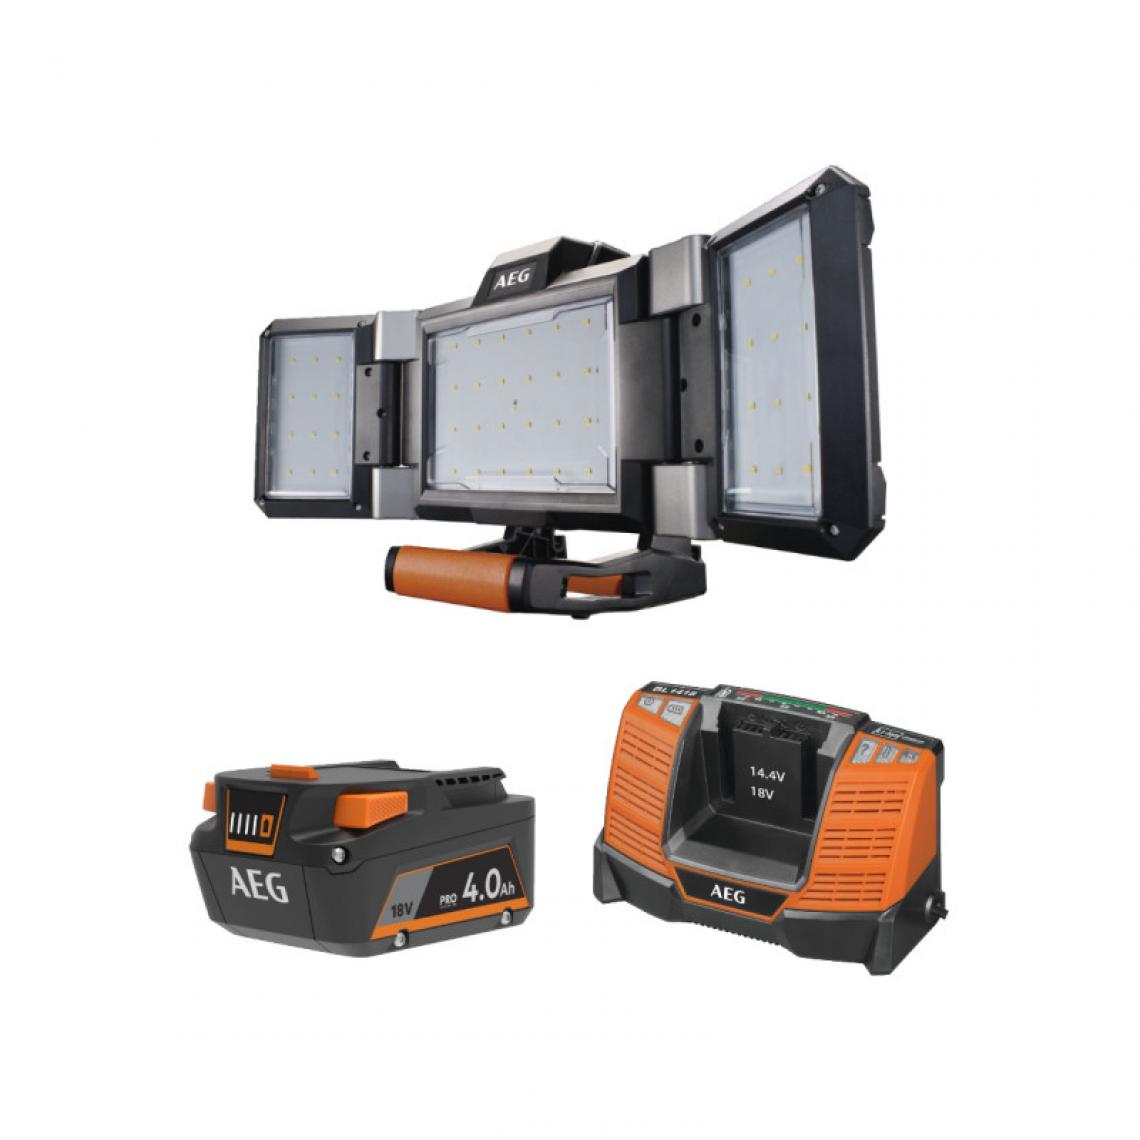 AEG - Pack AEG 18V - Projecteur LED triple panneaux 2500 lumens - Batterie 4.0 Ah - Chargeur - Projecteur de chantier